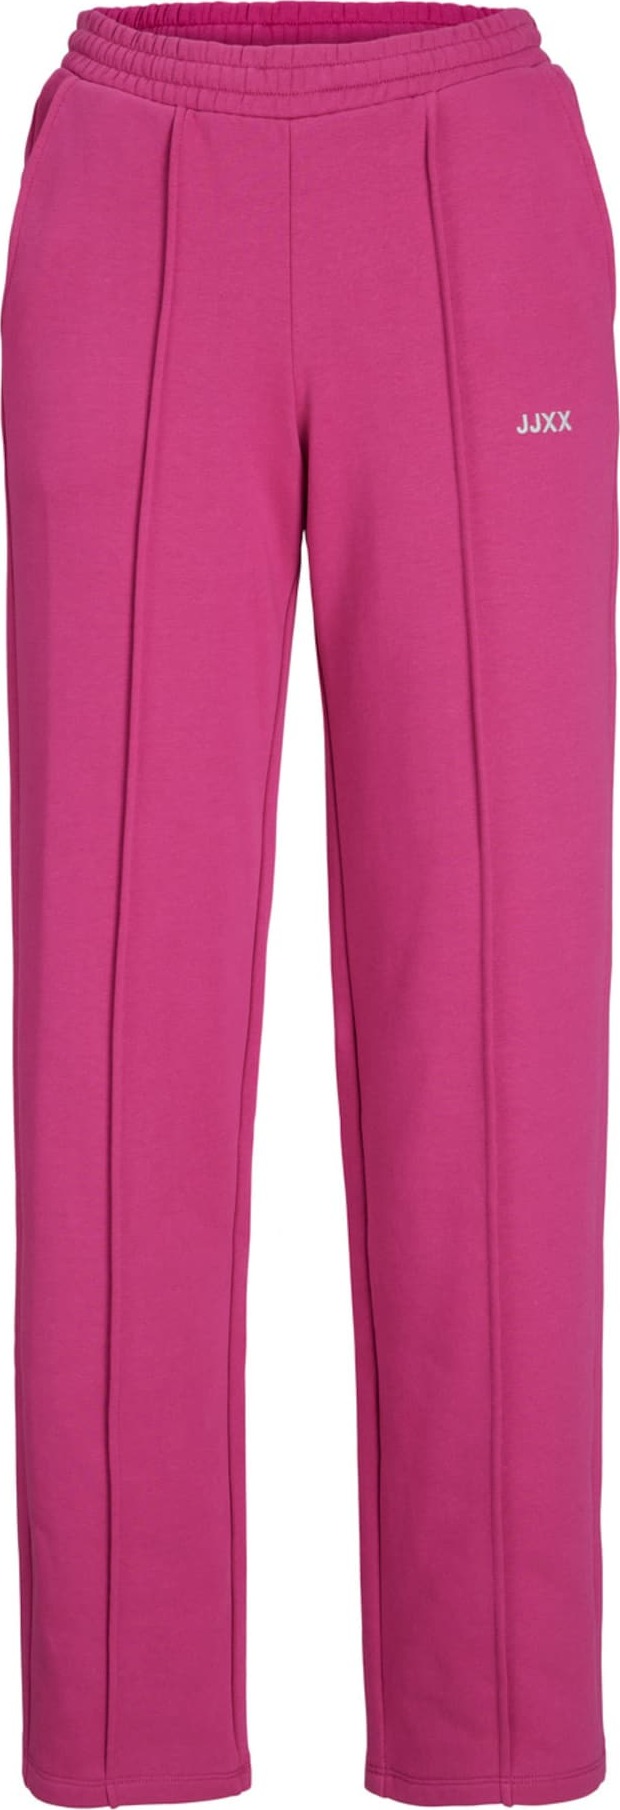 JJXX Kalhoty s puky 'Camilla' pink / bílá